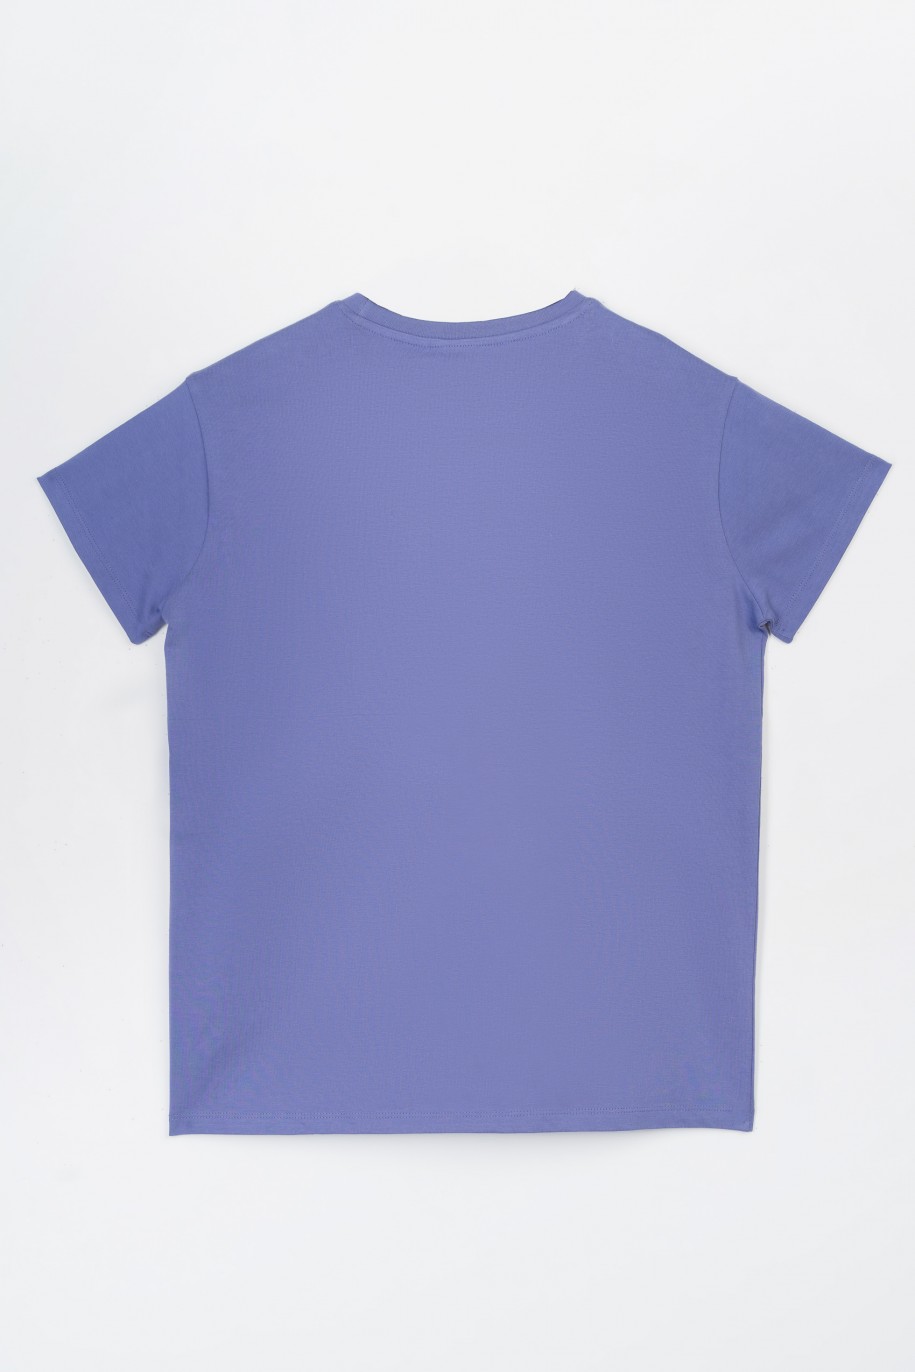 Fioletowy t-shirt z hologramowym nadrukiem na wysokości piersi - 47272